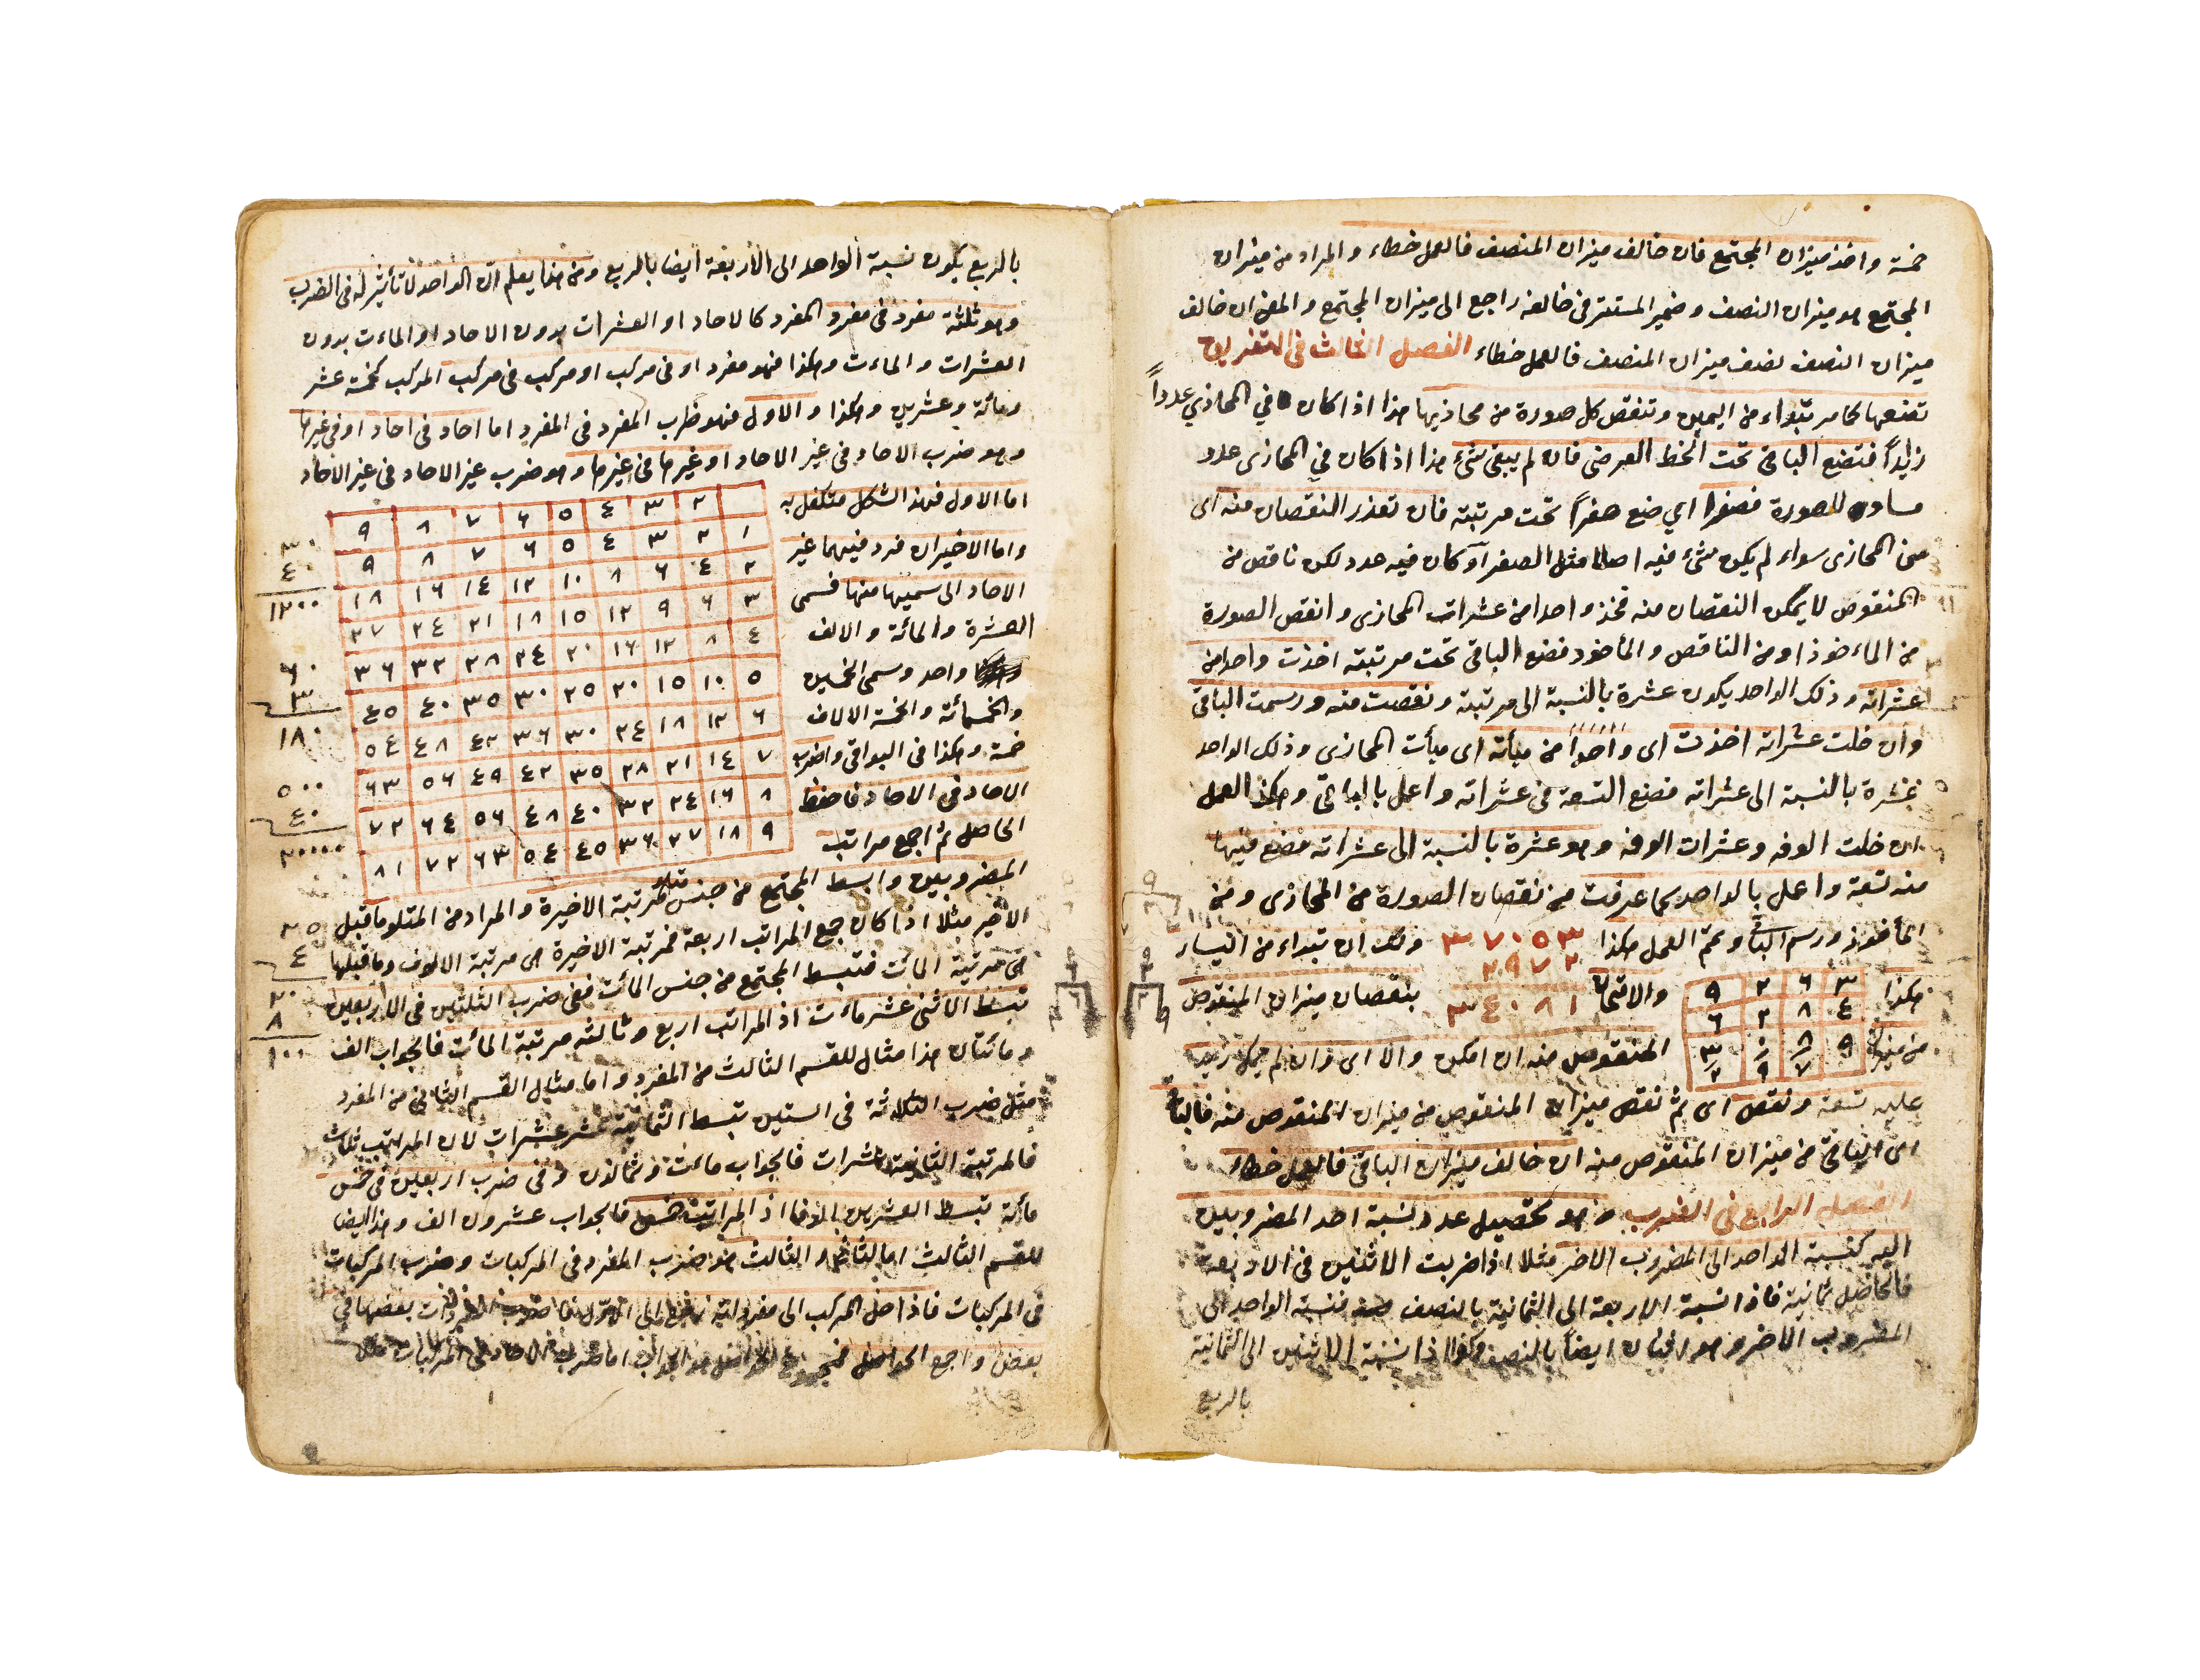 NUZHAT ALEUQUL WA- ALBAB LI MARIFAT AL-HISAB, COPIED BY BARAK BIN MATALK AL-RASHDI IN 1250AH - Image 4 of 7